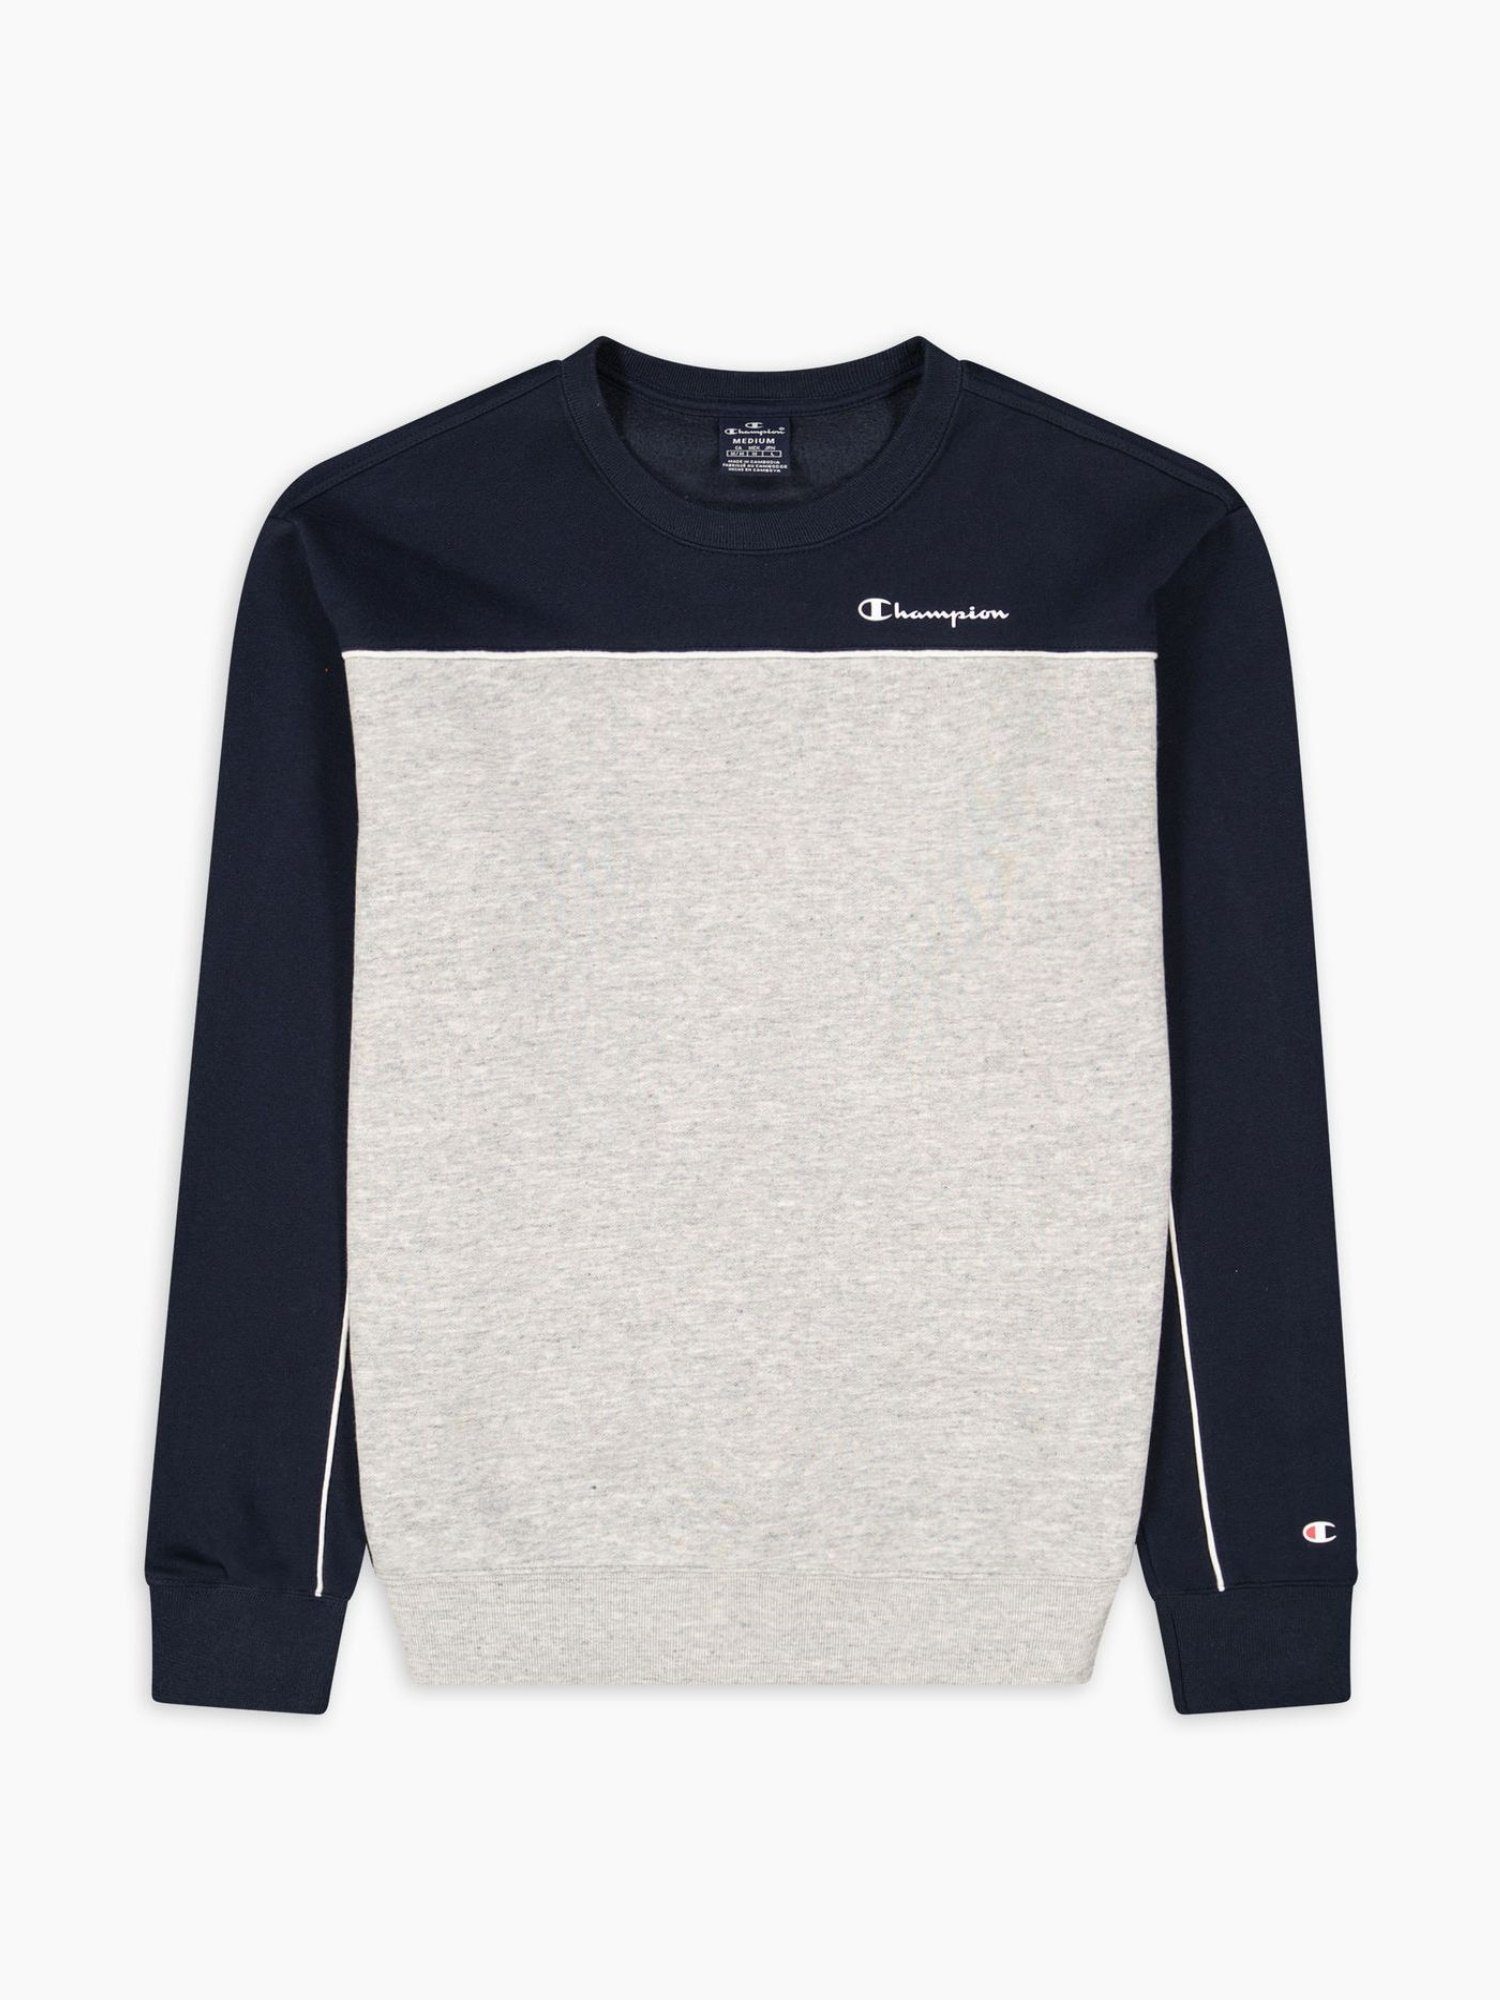 Pullover in Champion Farbblockoptik Sweatshirt und blau Fleece-Sweatshirt